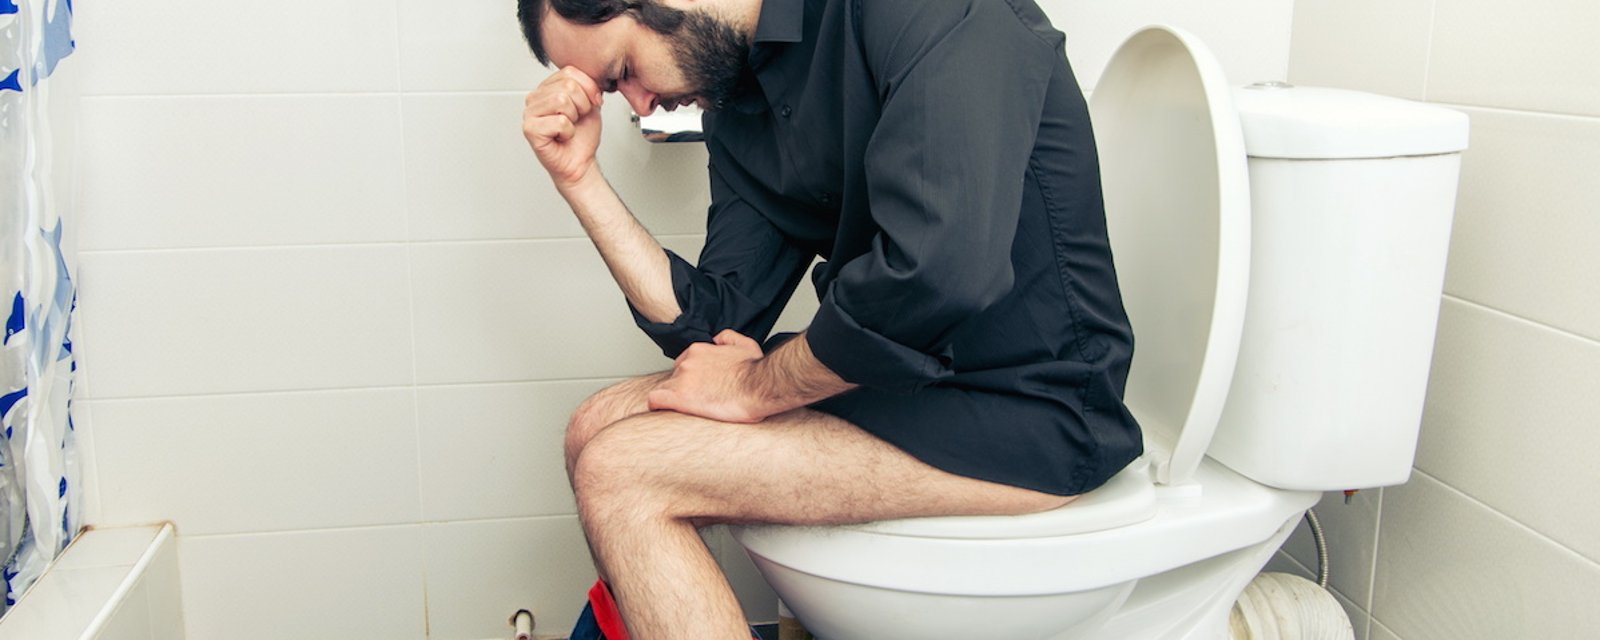 Une nouvelle étude nous apprend que les hommes passeraint sept heures par an aux toilettes… pour avoir la paix!